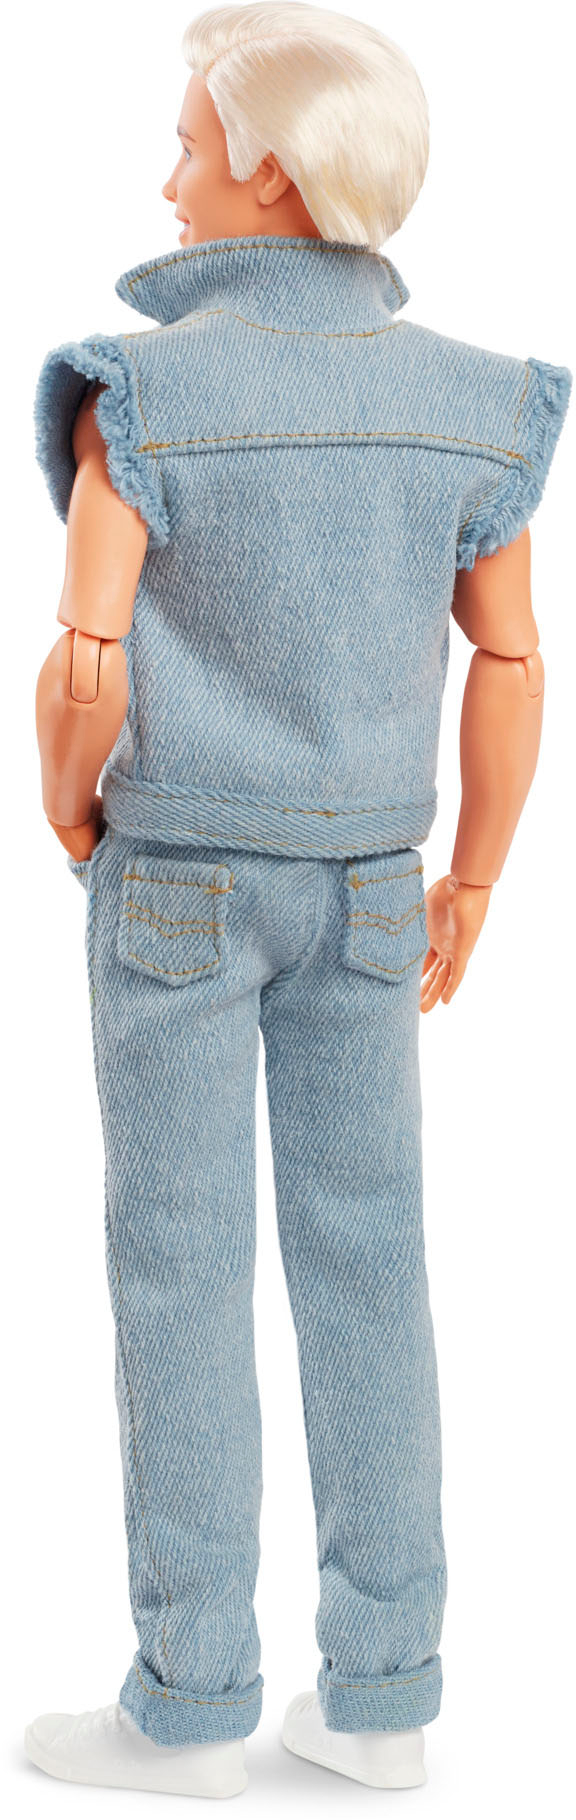 Ken Beige Jumpsuit  outfit from Toy Story 3., Ken Best Bu…